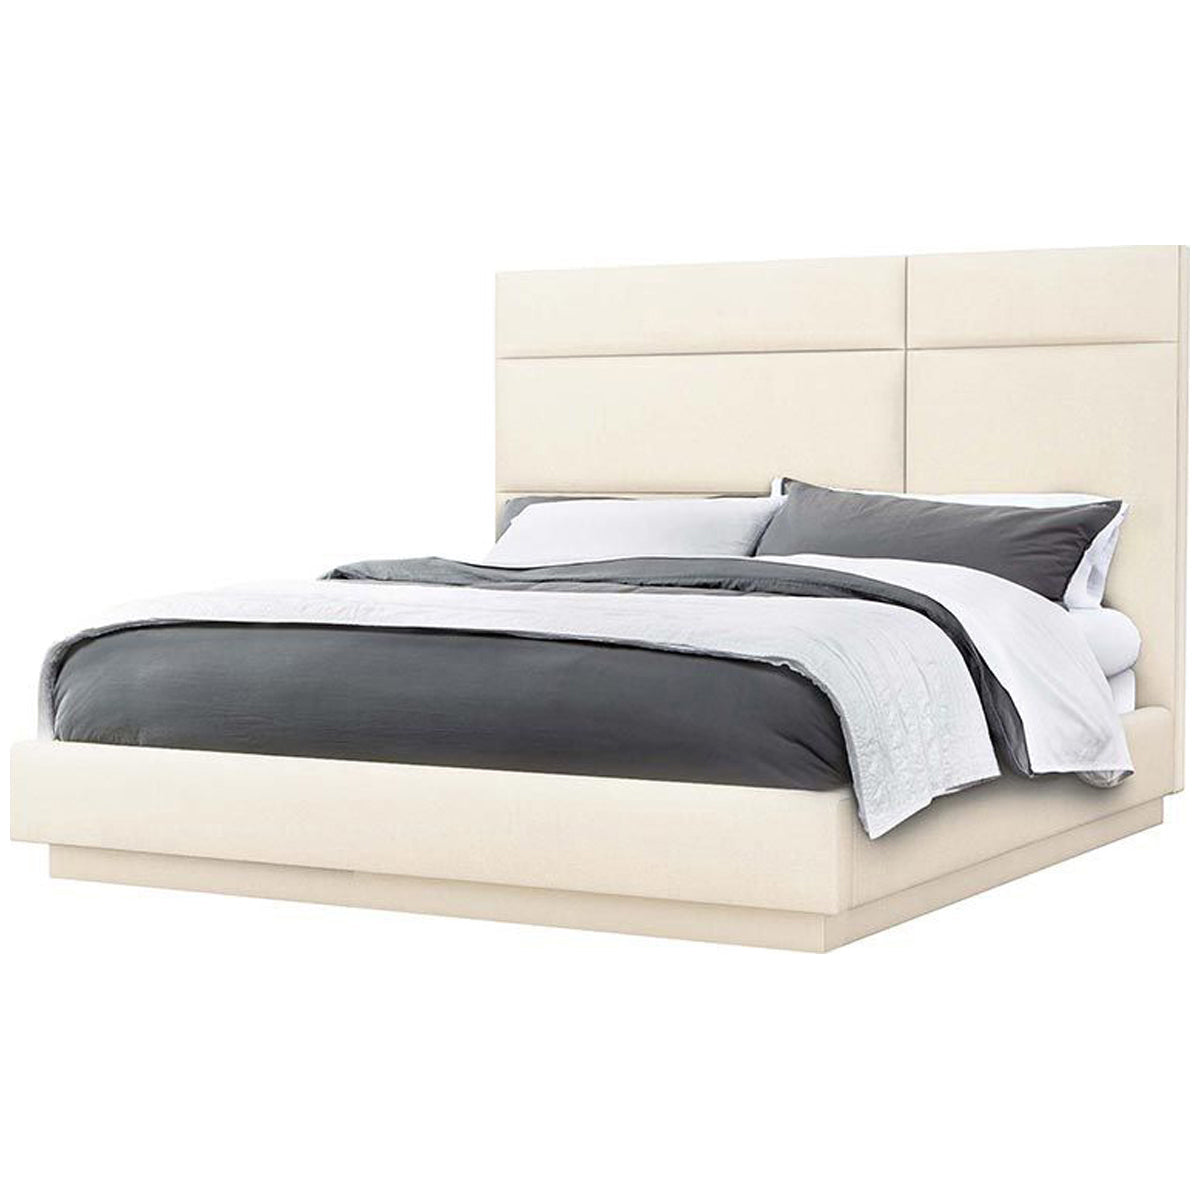 Interlude Home Quadrant Bay Crest Bed - Pure